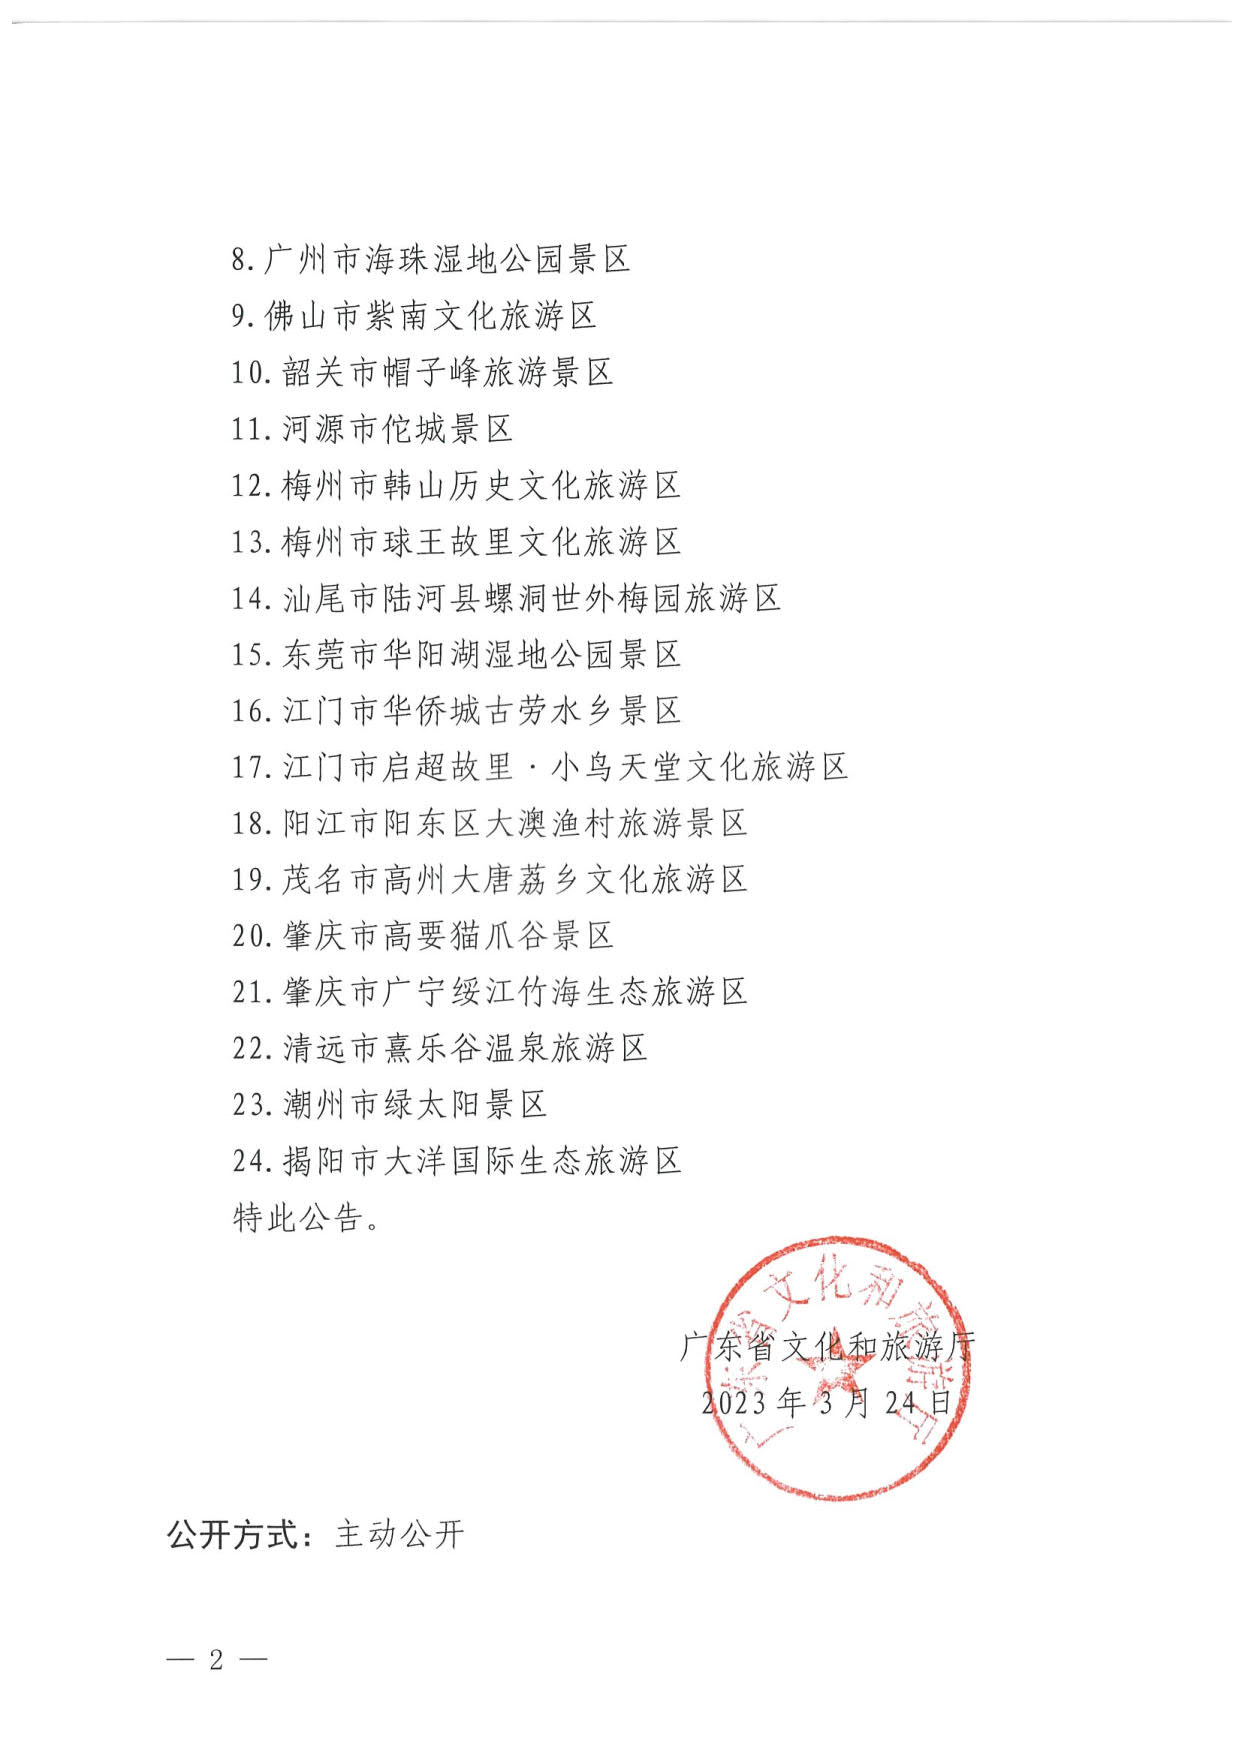 广东省文化和旅游厅关于确定24家旅游景区为国家4A级旅游景区的公告_2.jpg